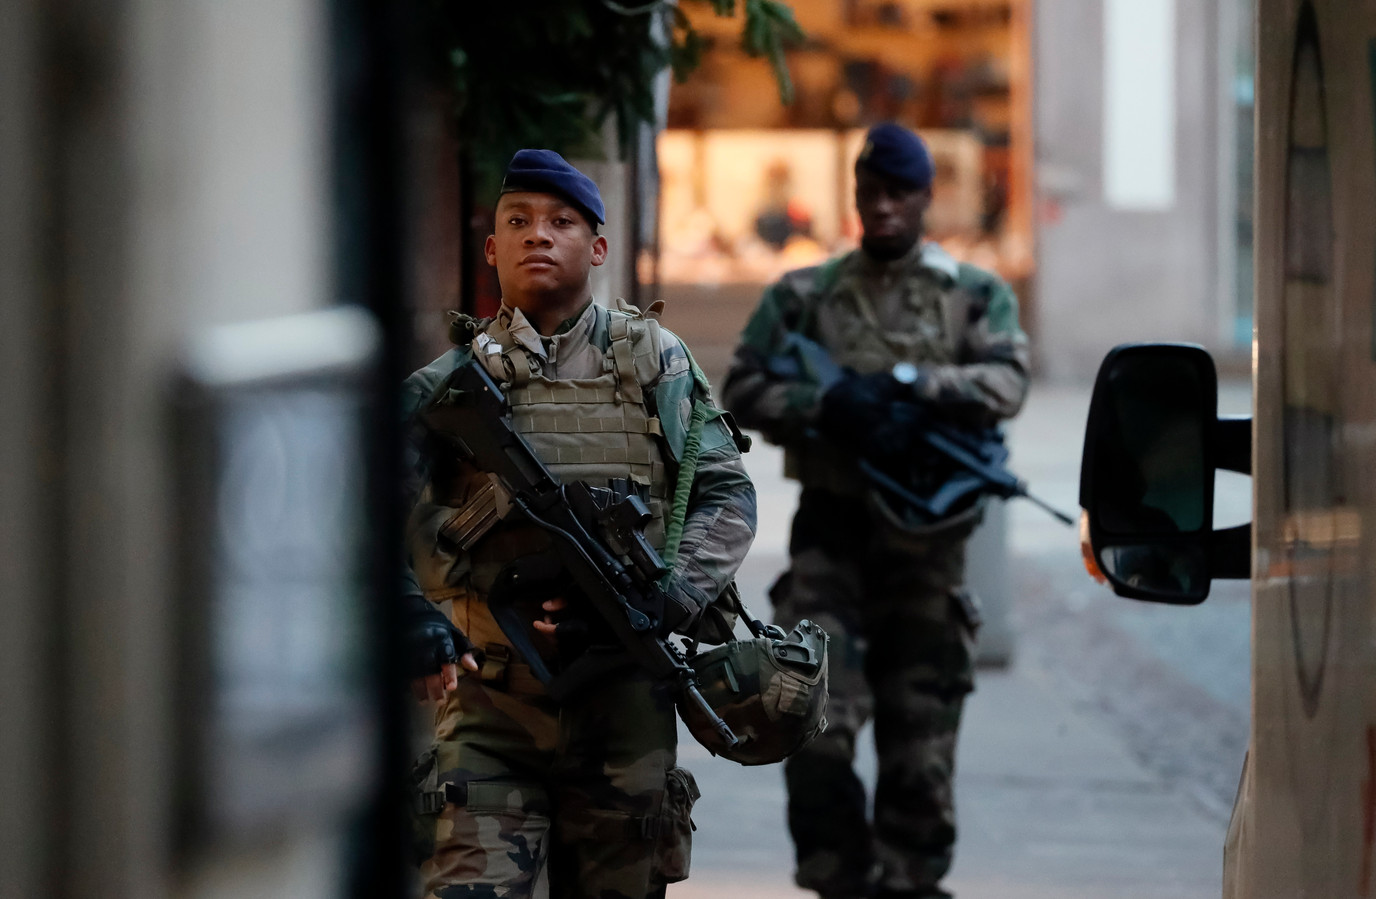 مكافحة الإرهاب ـ مواجهة مفتوحة مع "الإسلام السياسي" في فرنسا